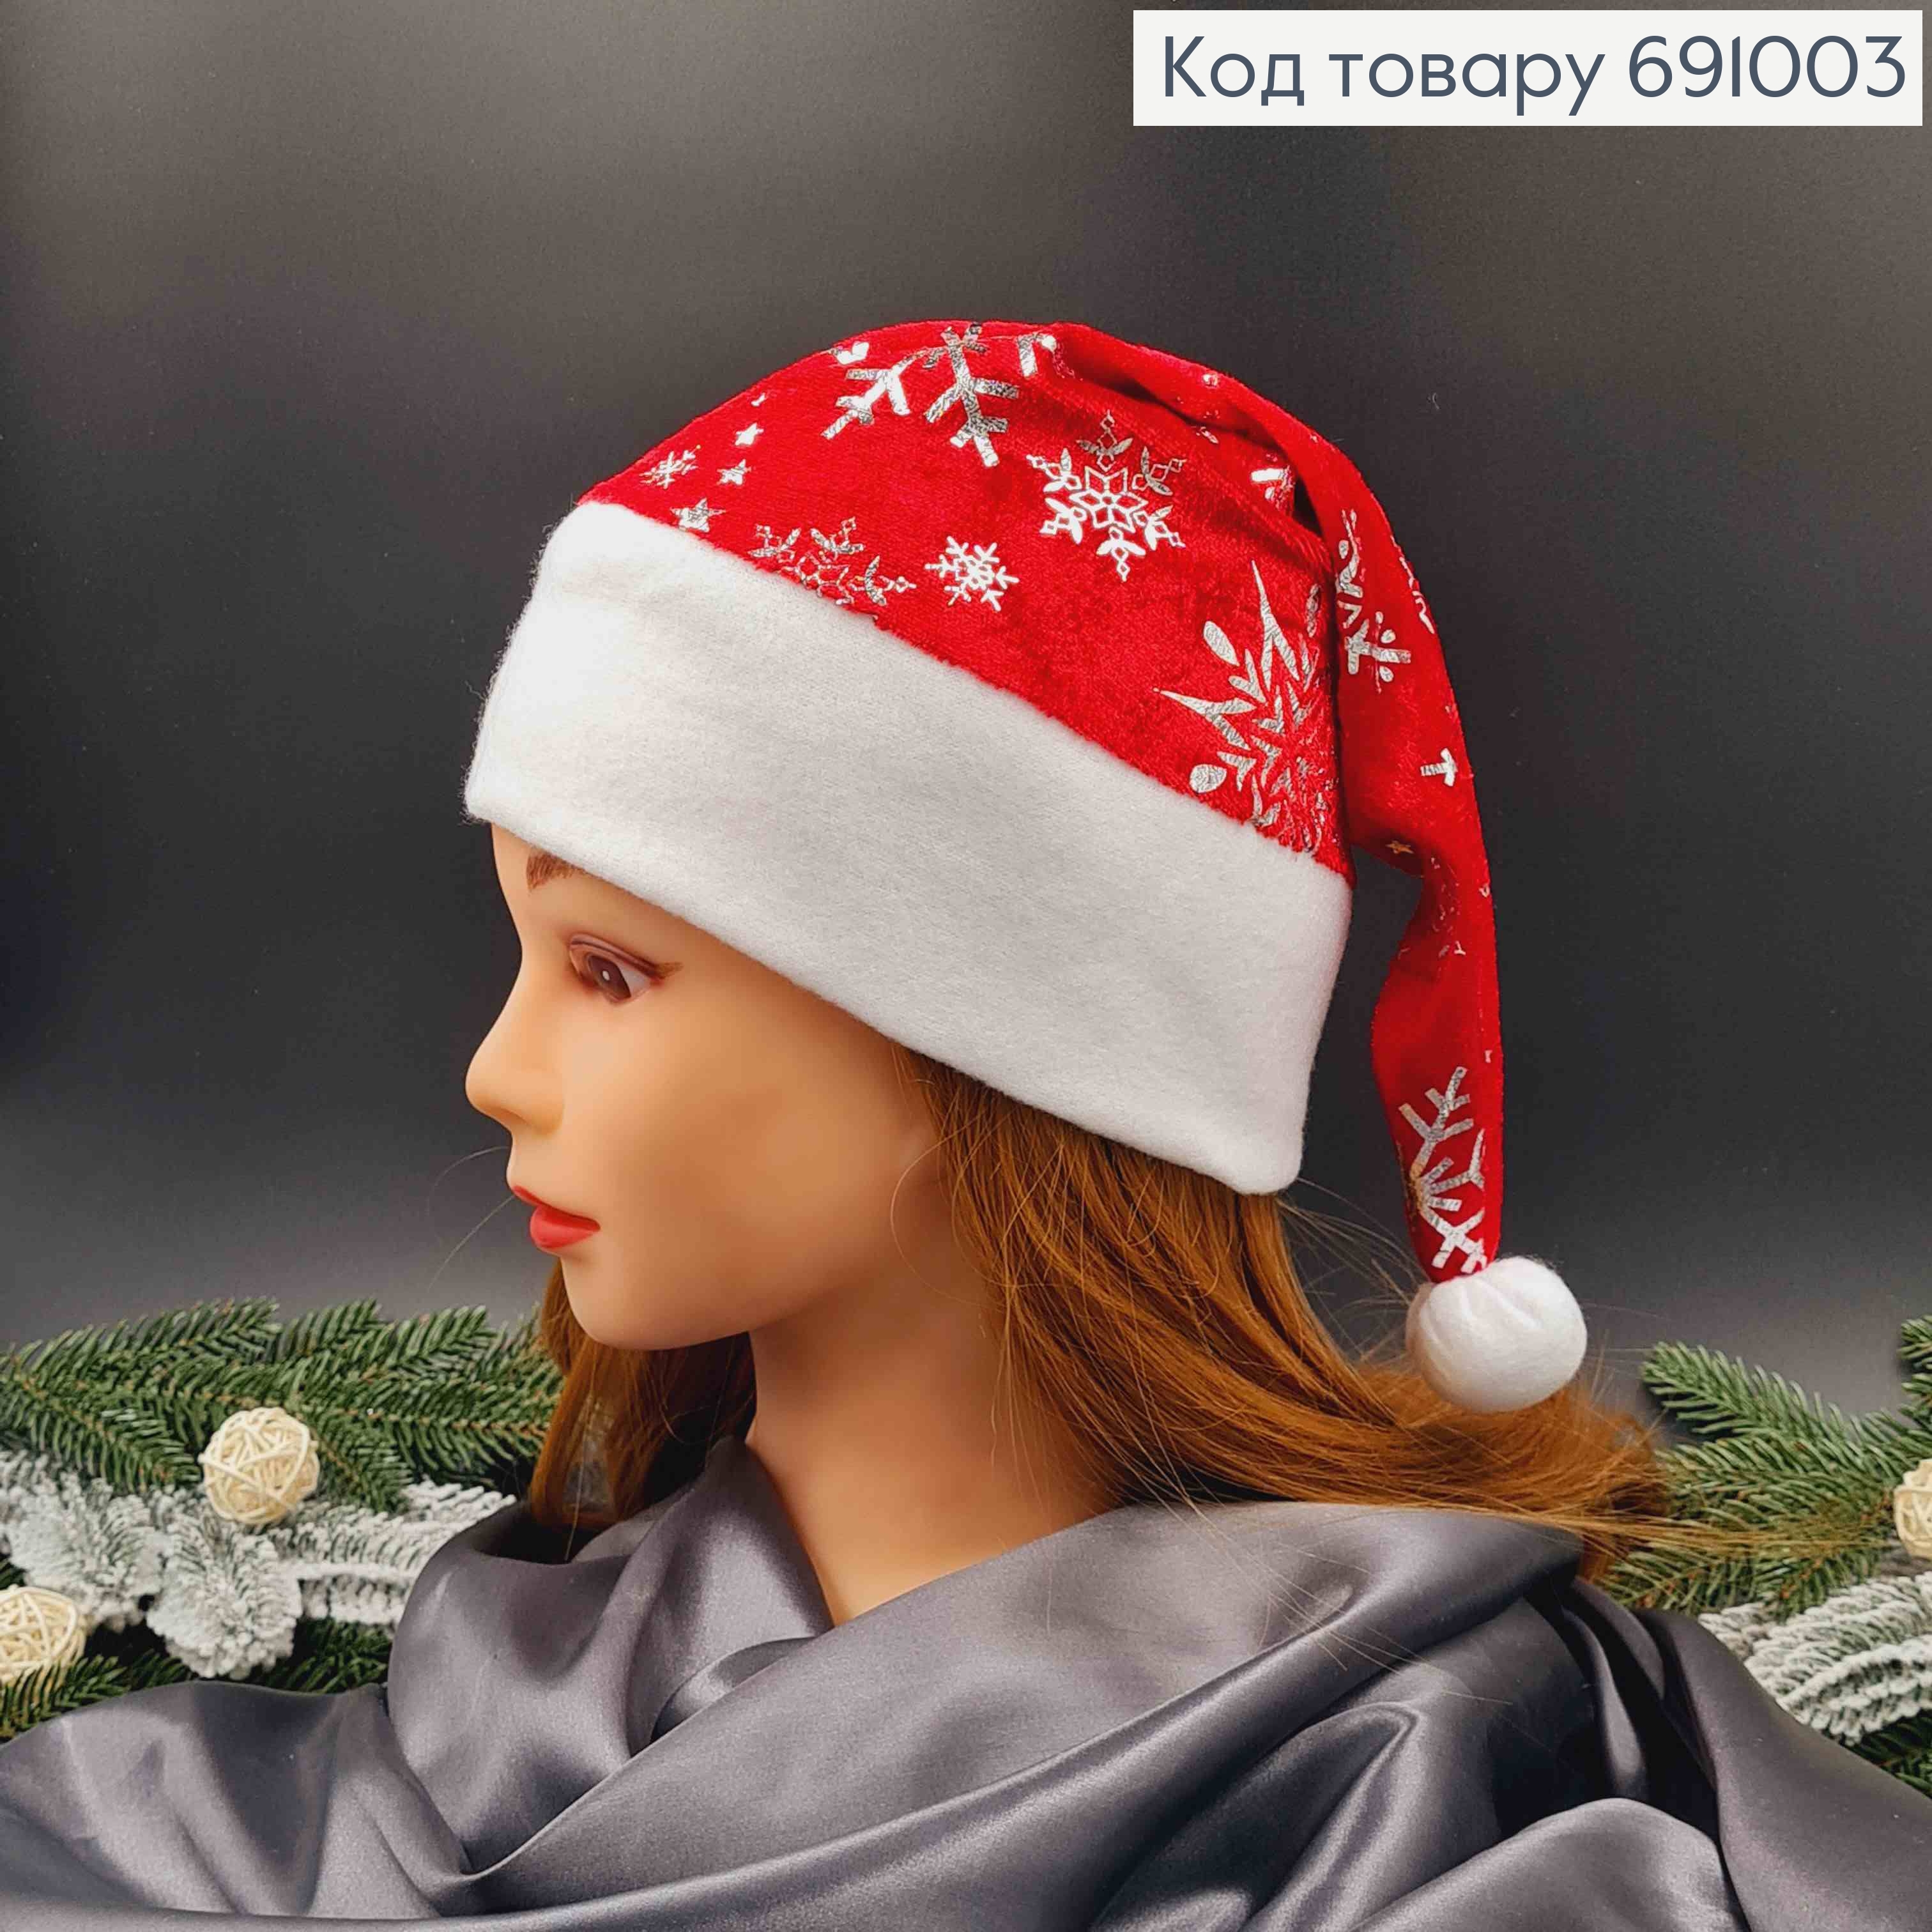 Шапочка новорічна, Червоного кольору з сніжинками срібного кольору, велюрова 691003 фото 2